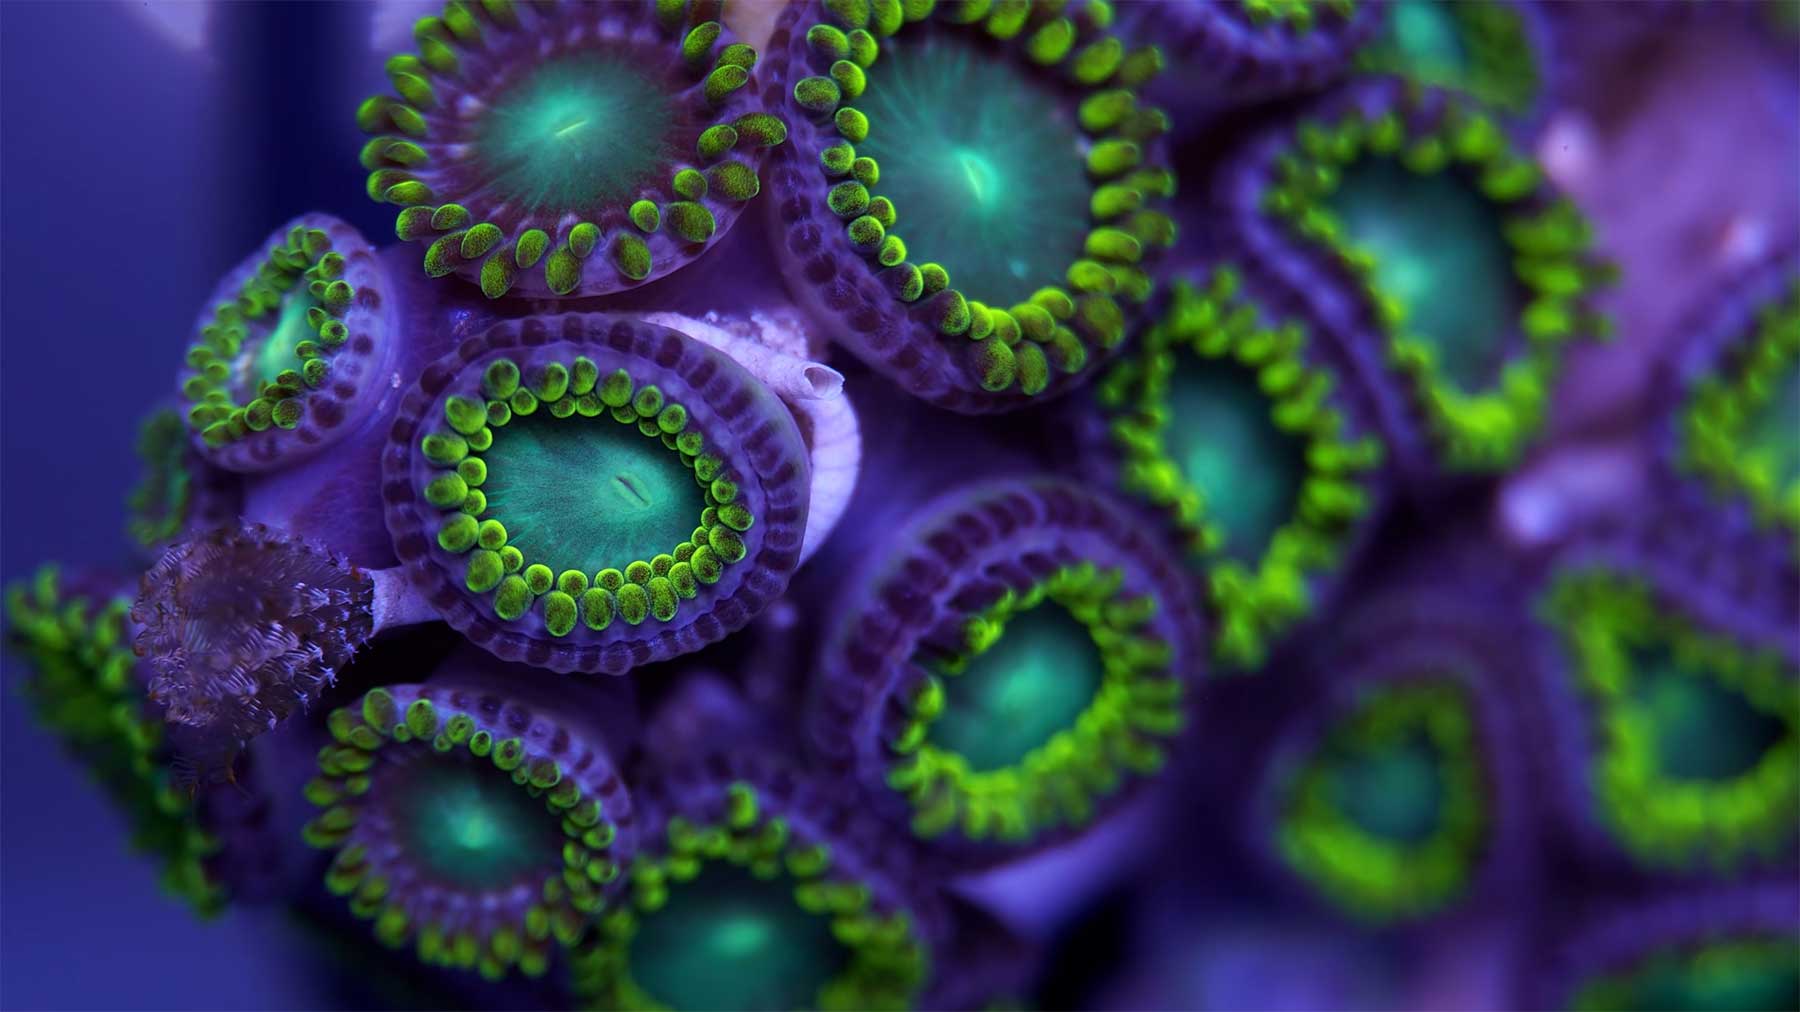 Bunte Korallen unter dem Mikroskop angeschaut